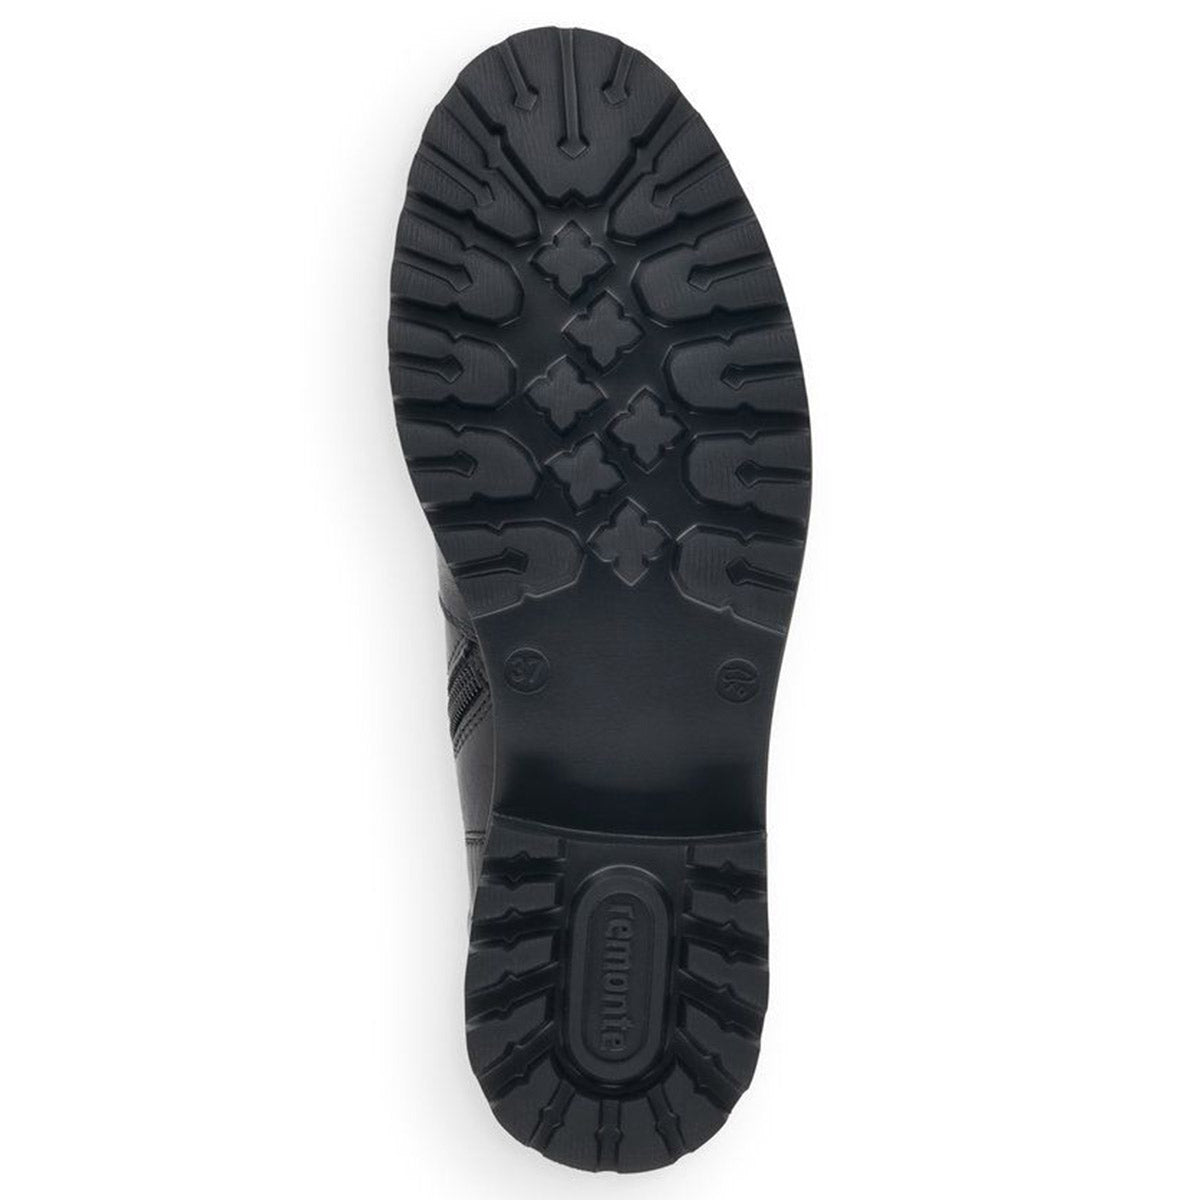 Remonte black women&#39;s shoe sole with tread pattern.